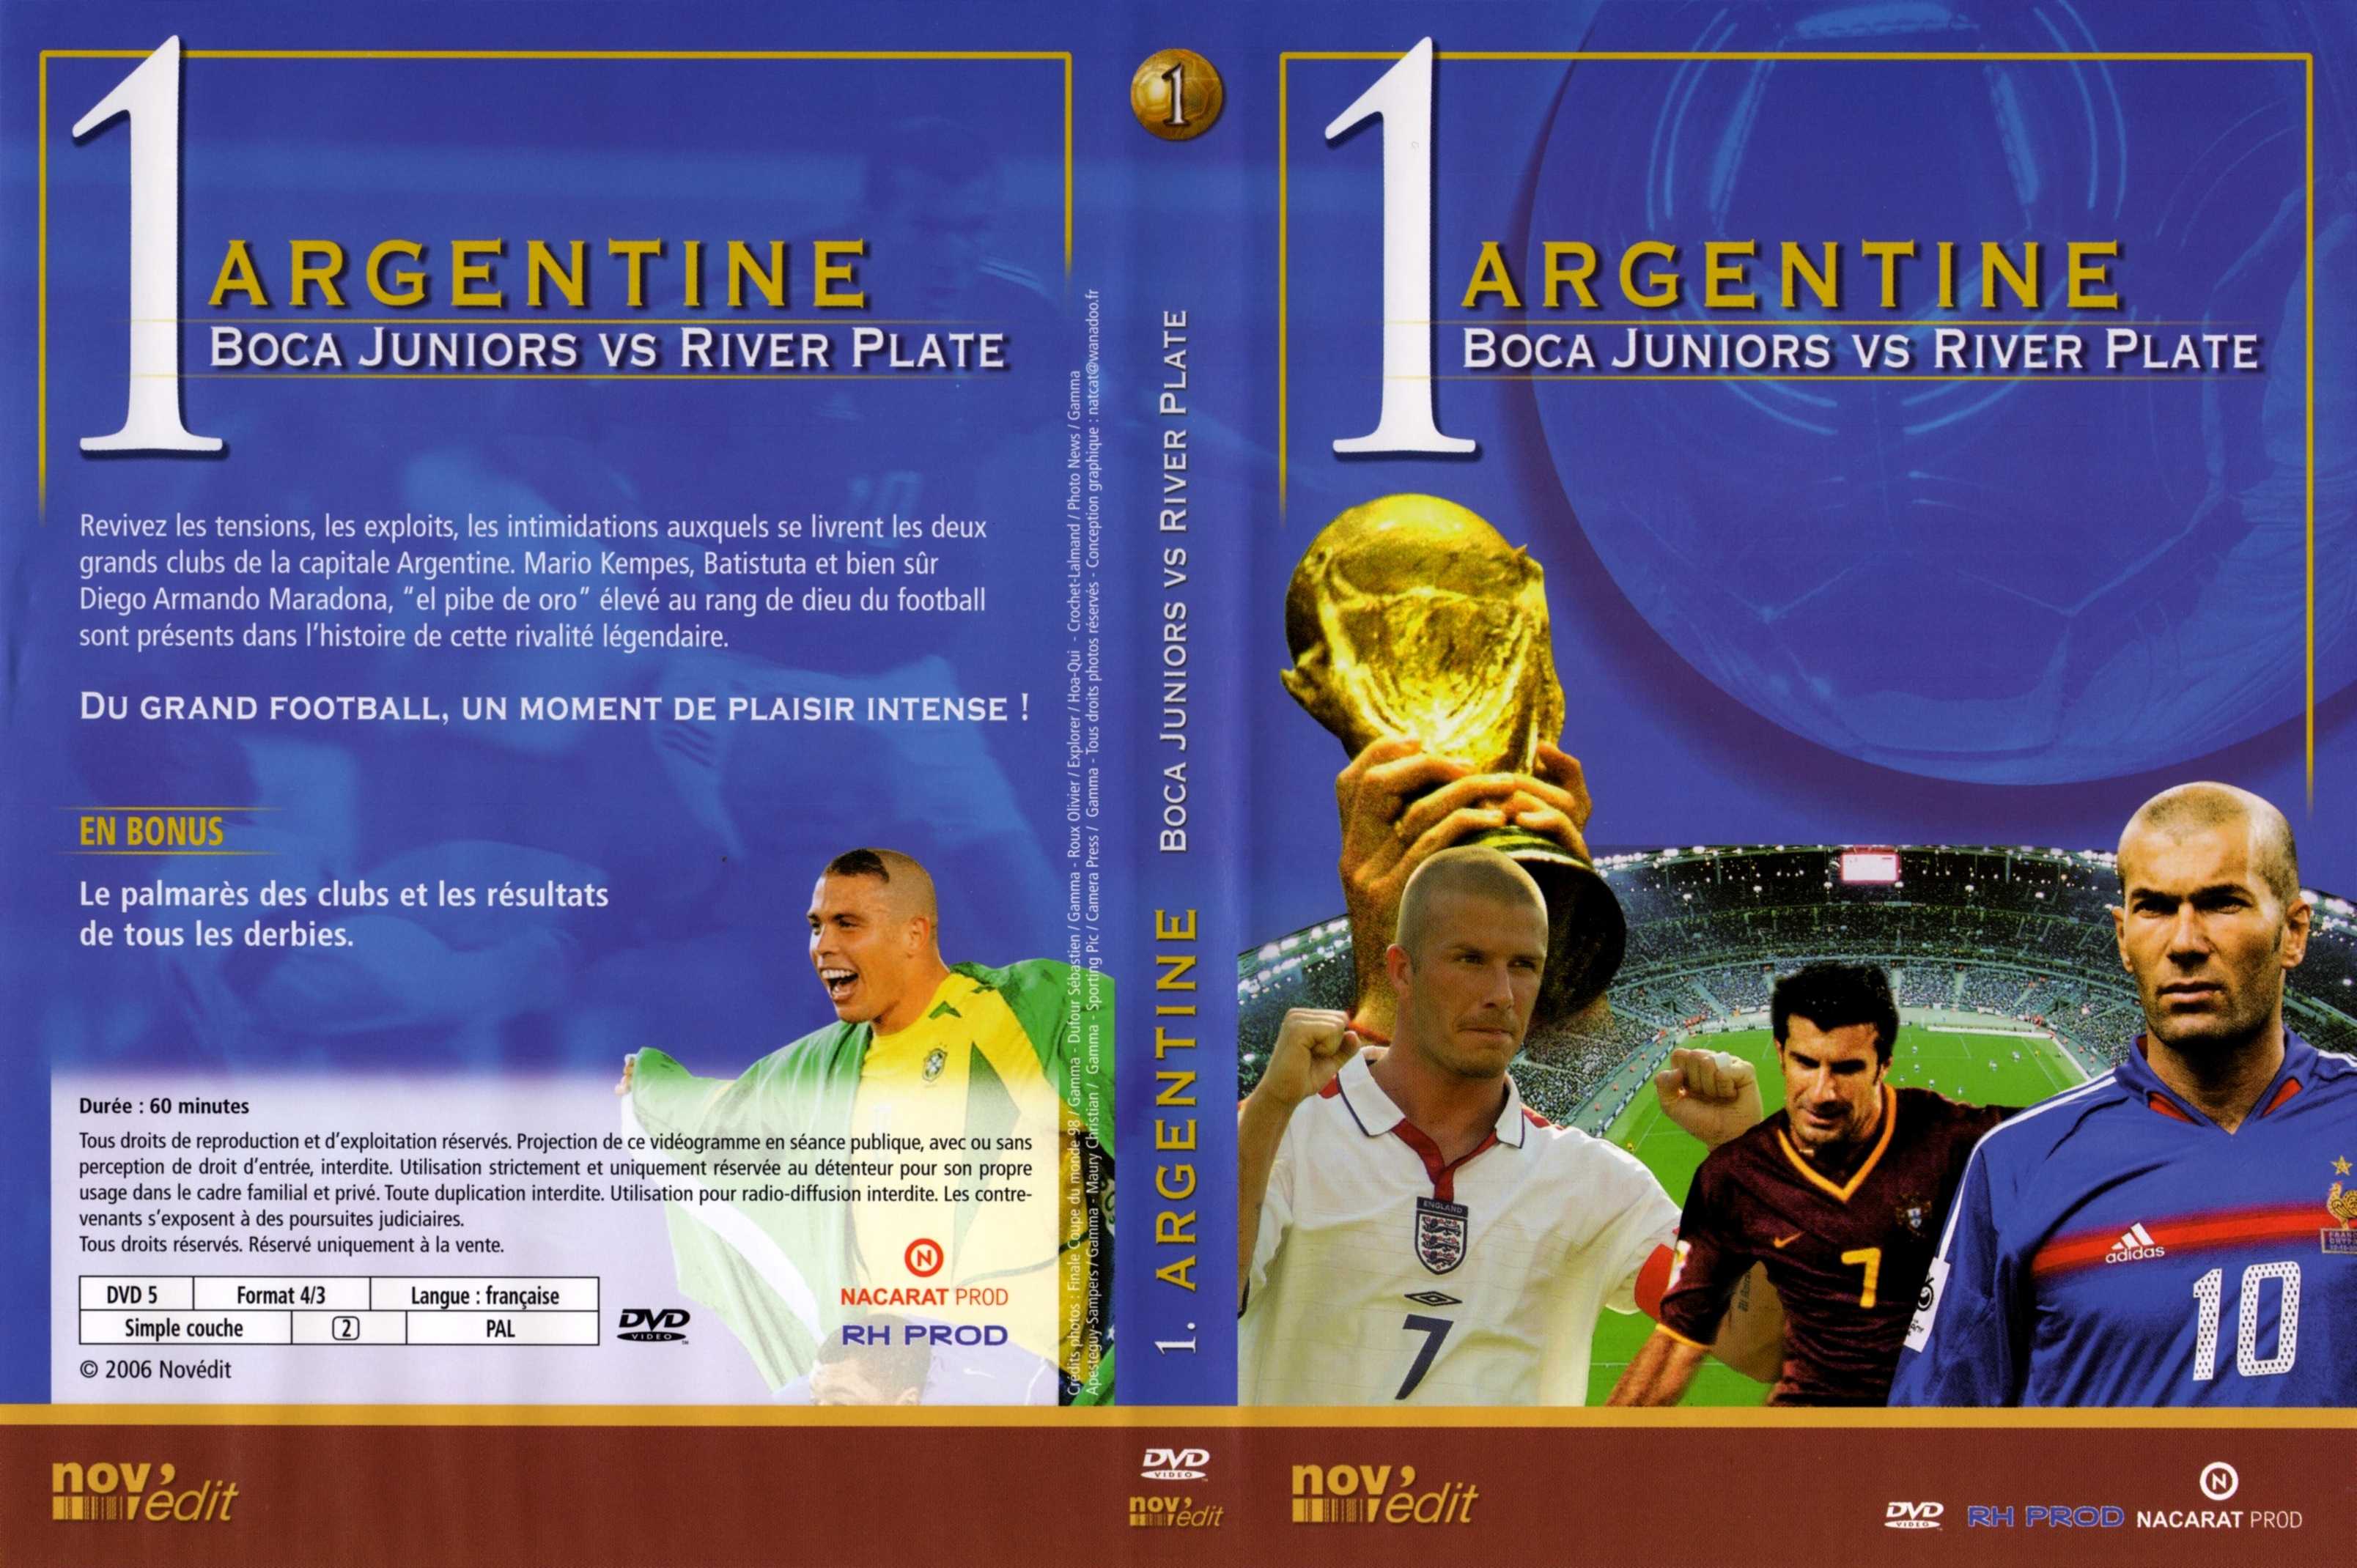 Jaquette DVD Portraits de lgende DVD 1 Argentine